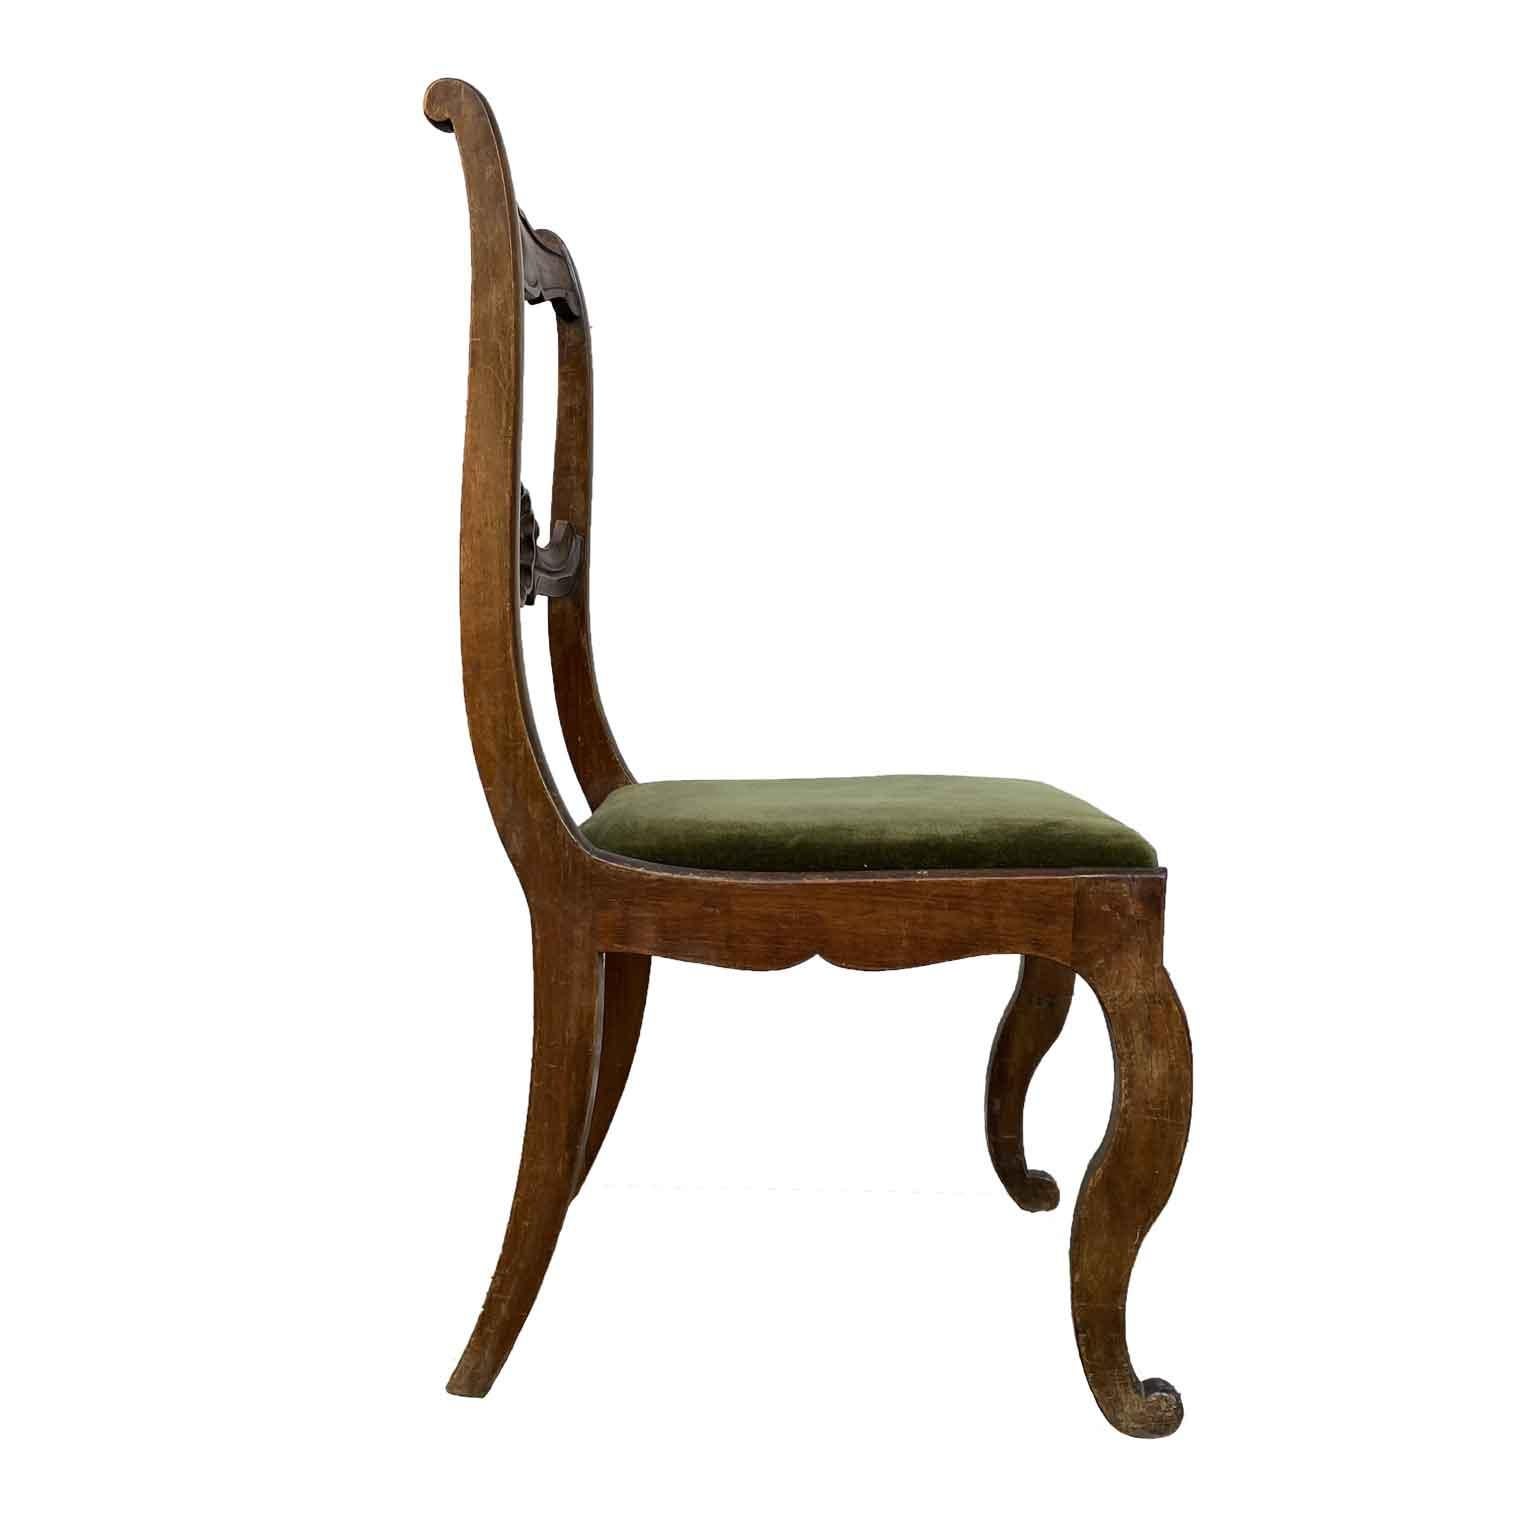 Six chaises italiennes en noyer sculpté datant de la fin des années 1800 avec un siège à rénover en velours vert. Les six chaises sont en bon état de menuiserie,  la structure en noyer est solide, mais elle a besoin d'une  le polissage et la remise